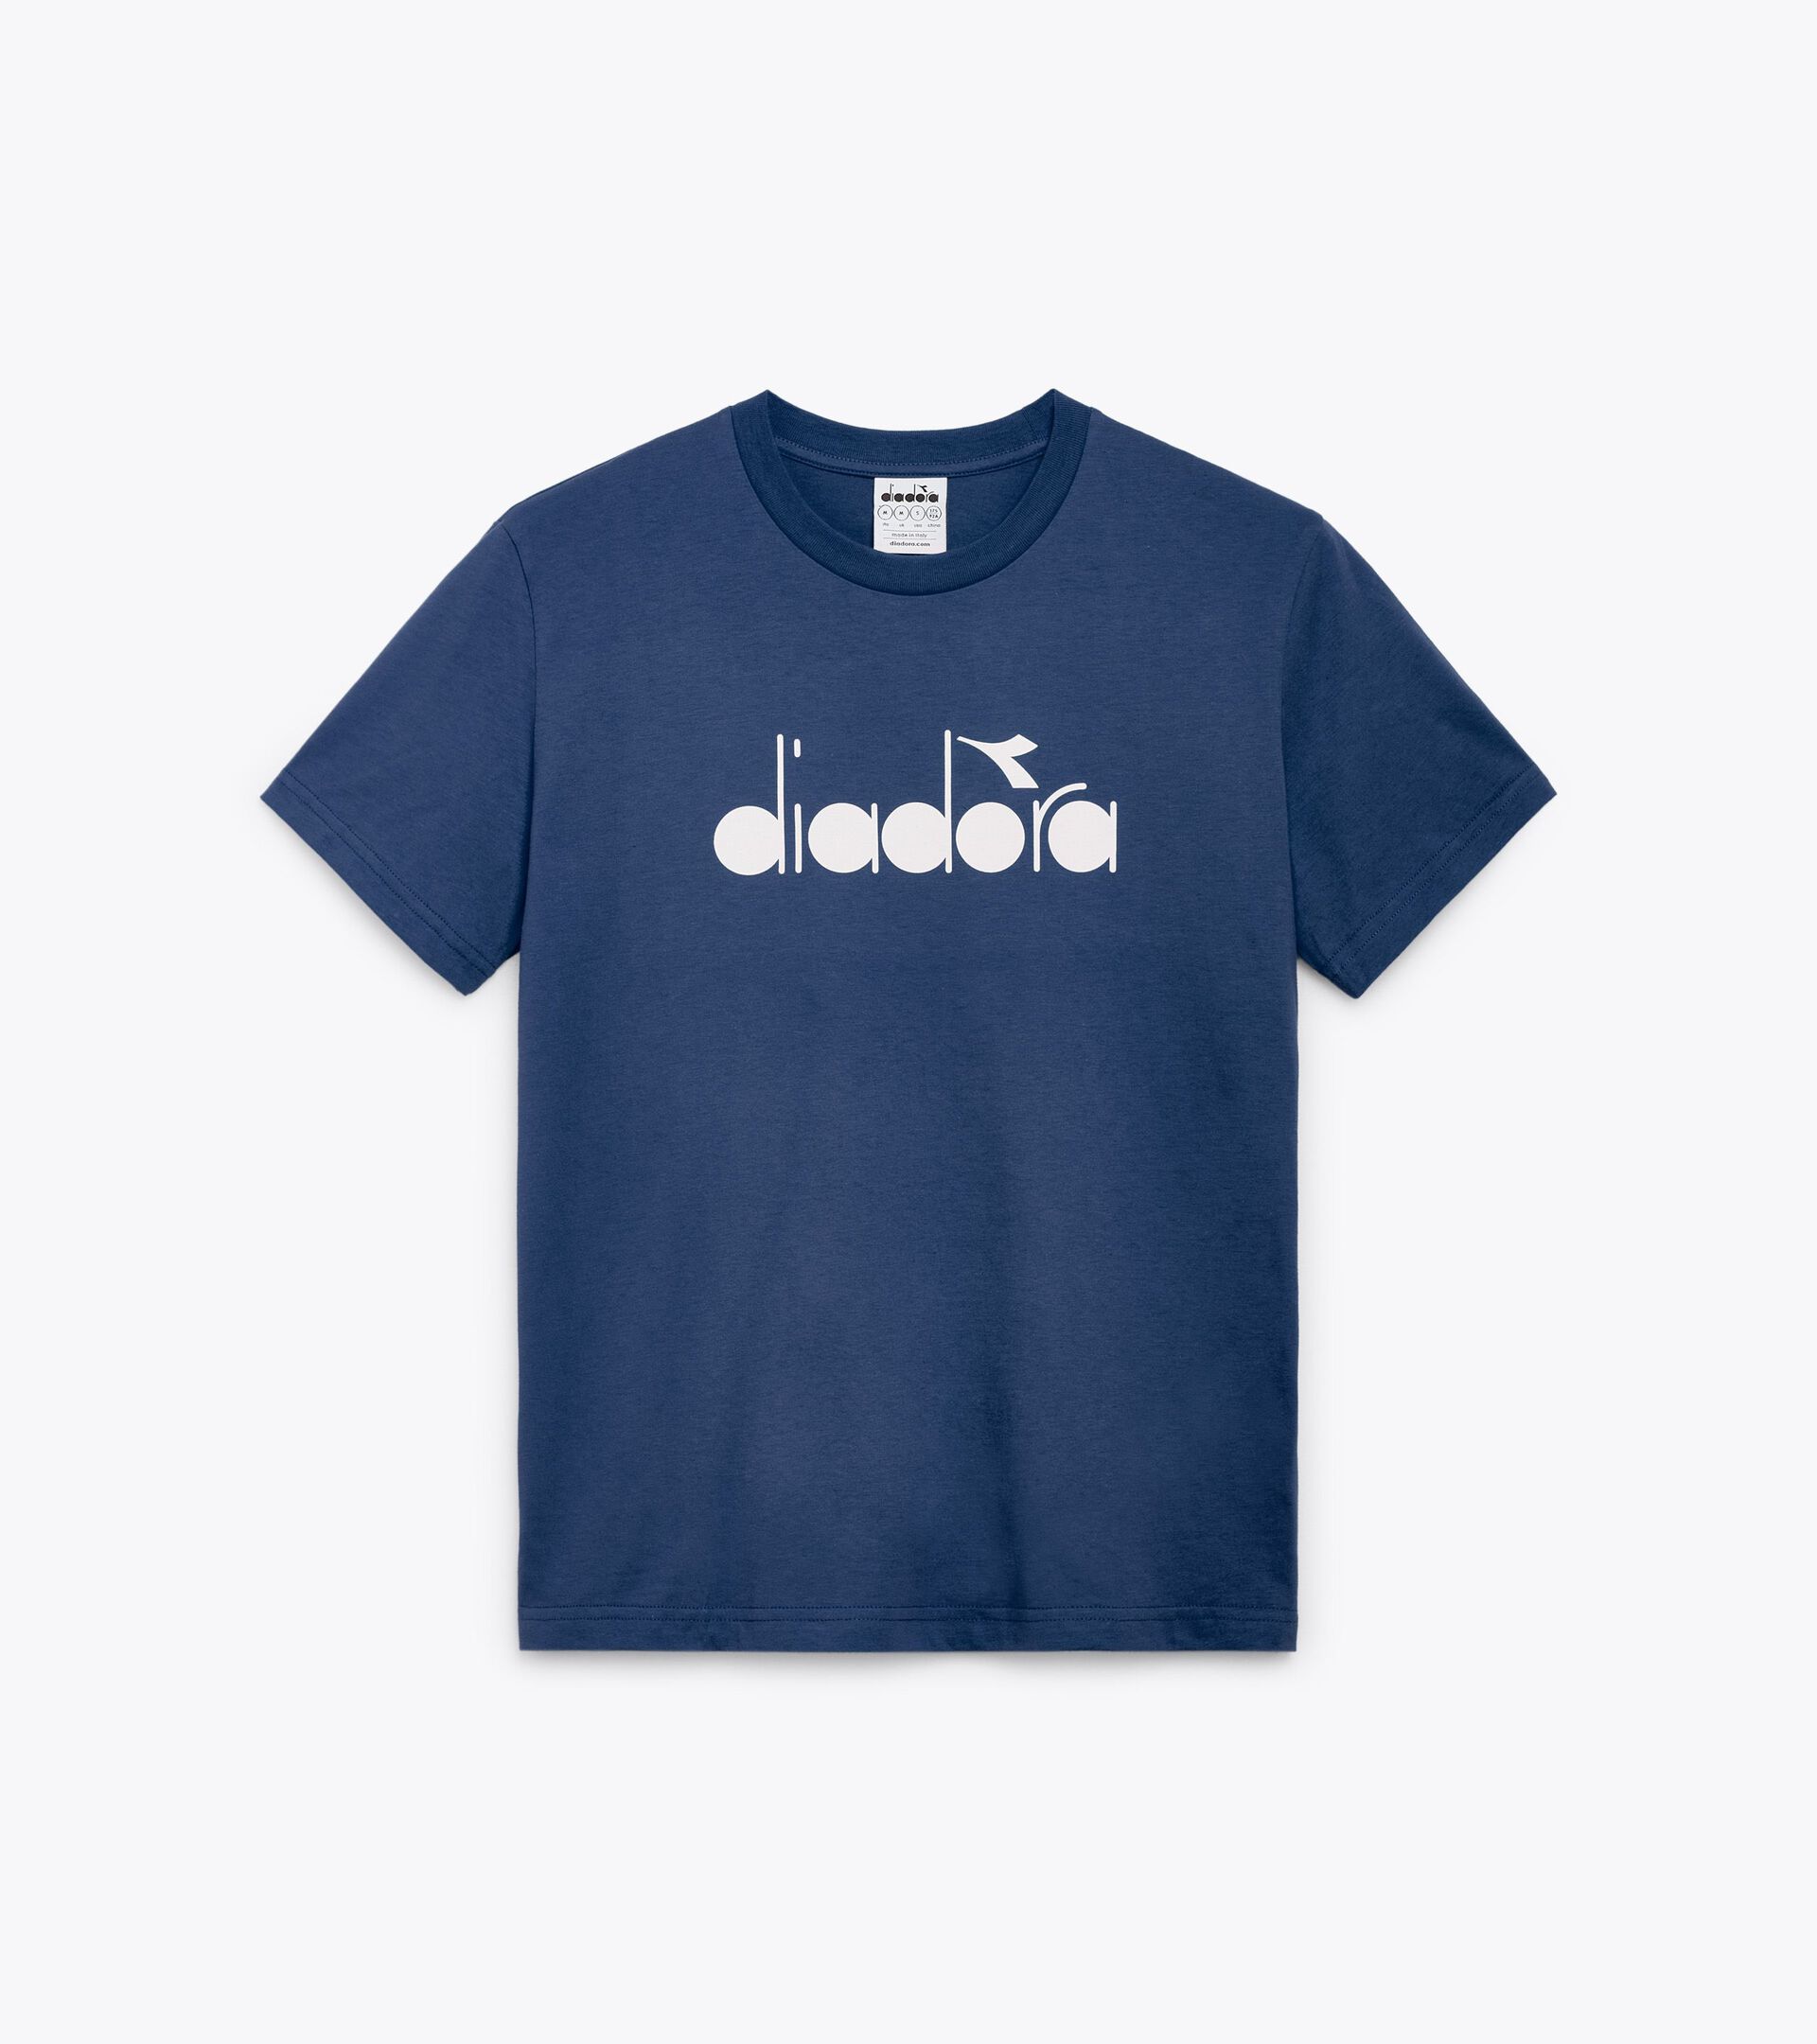 T-shirt - Made in Italy - Gender Neutral T-SHIRT SS LOGO BLU OCEANA - Diadora